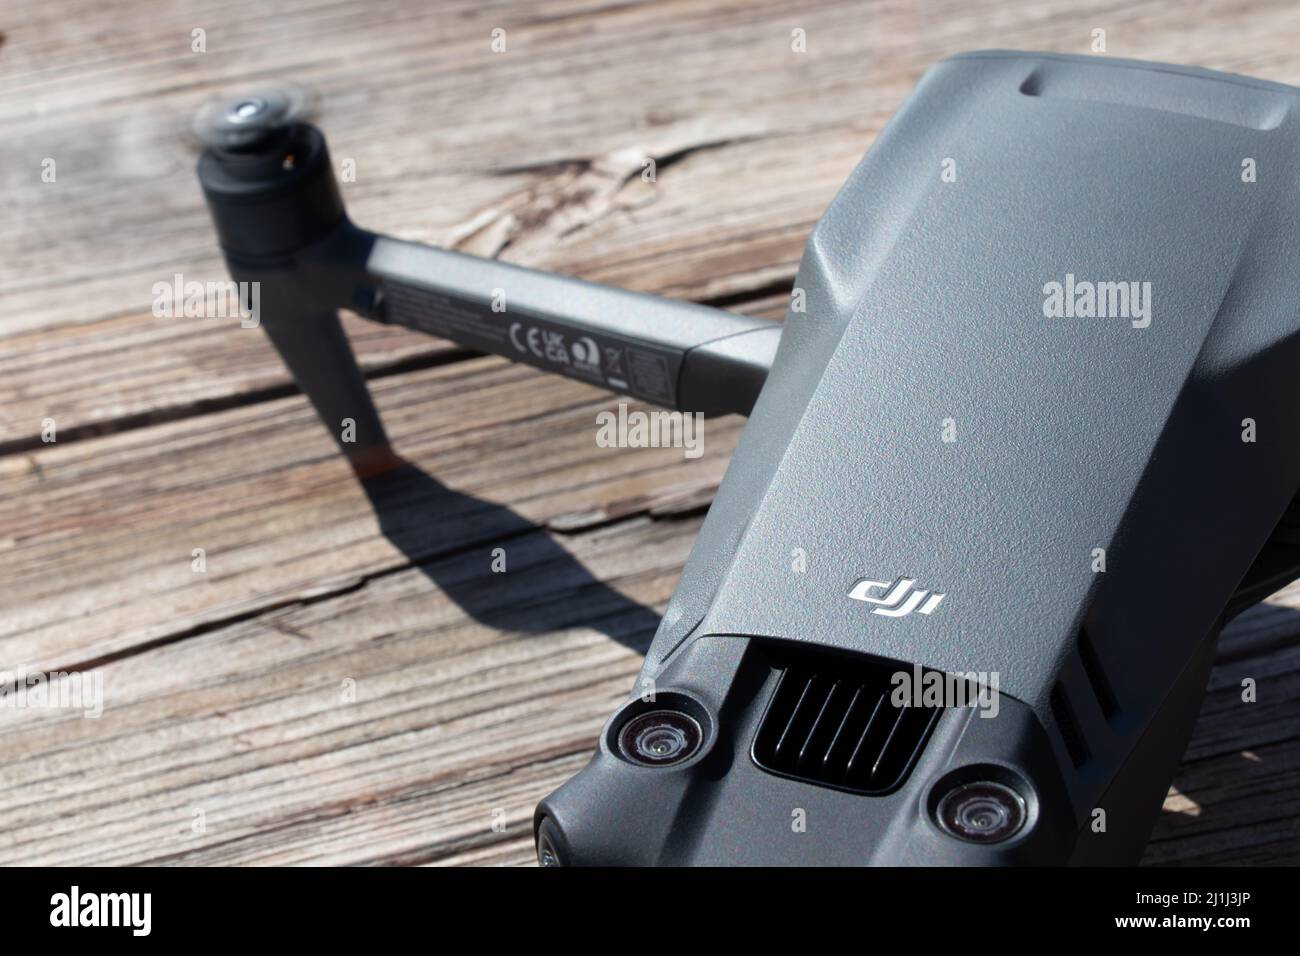 Le logo DJI, une société chinoise de technologie et un fabricant populaire de drones est vu sur le dessus du nouveau DDJI Mavic 3 consommateur drone. Banque D'Images